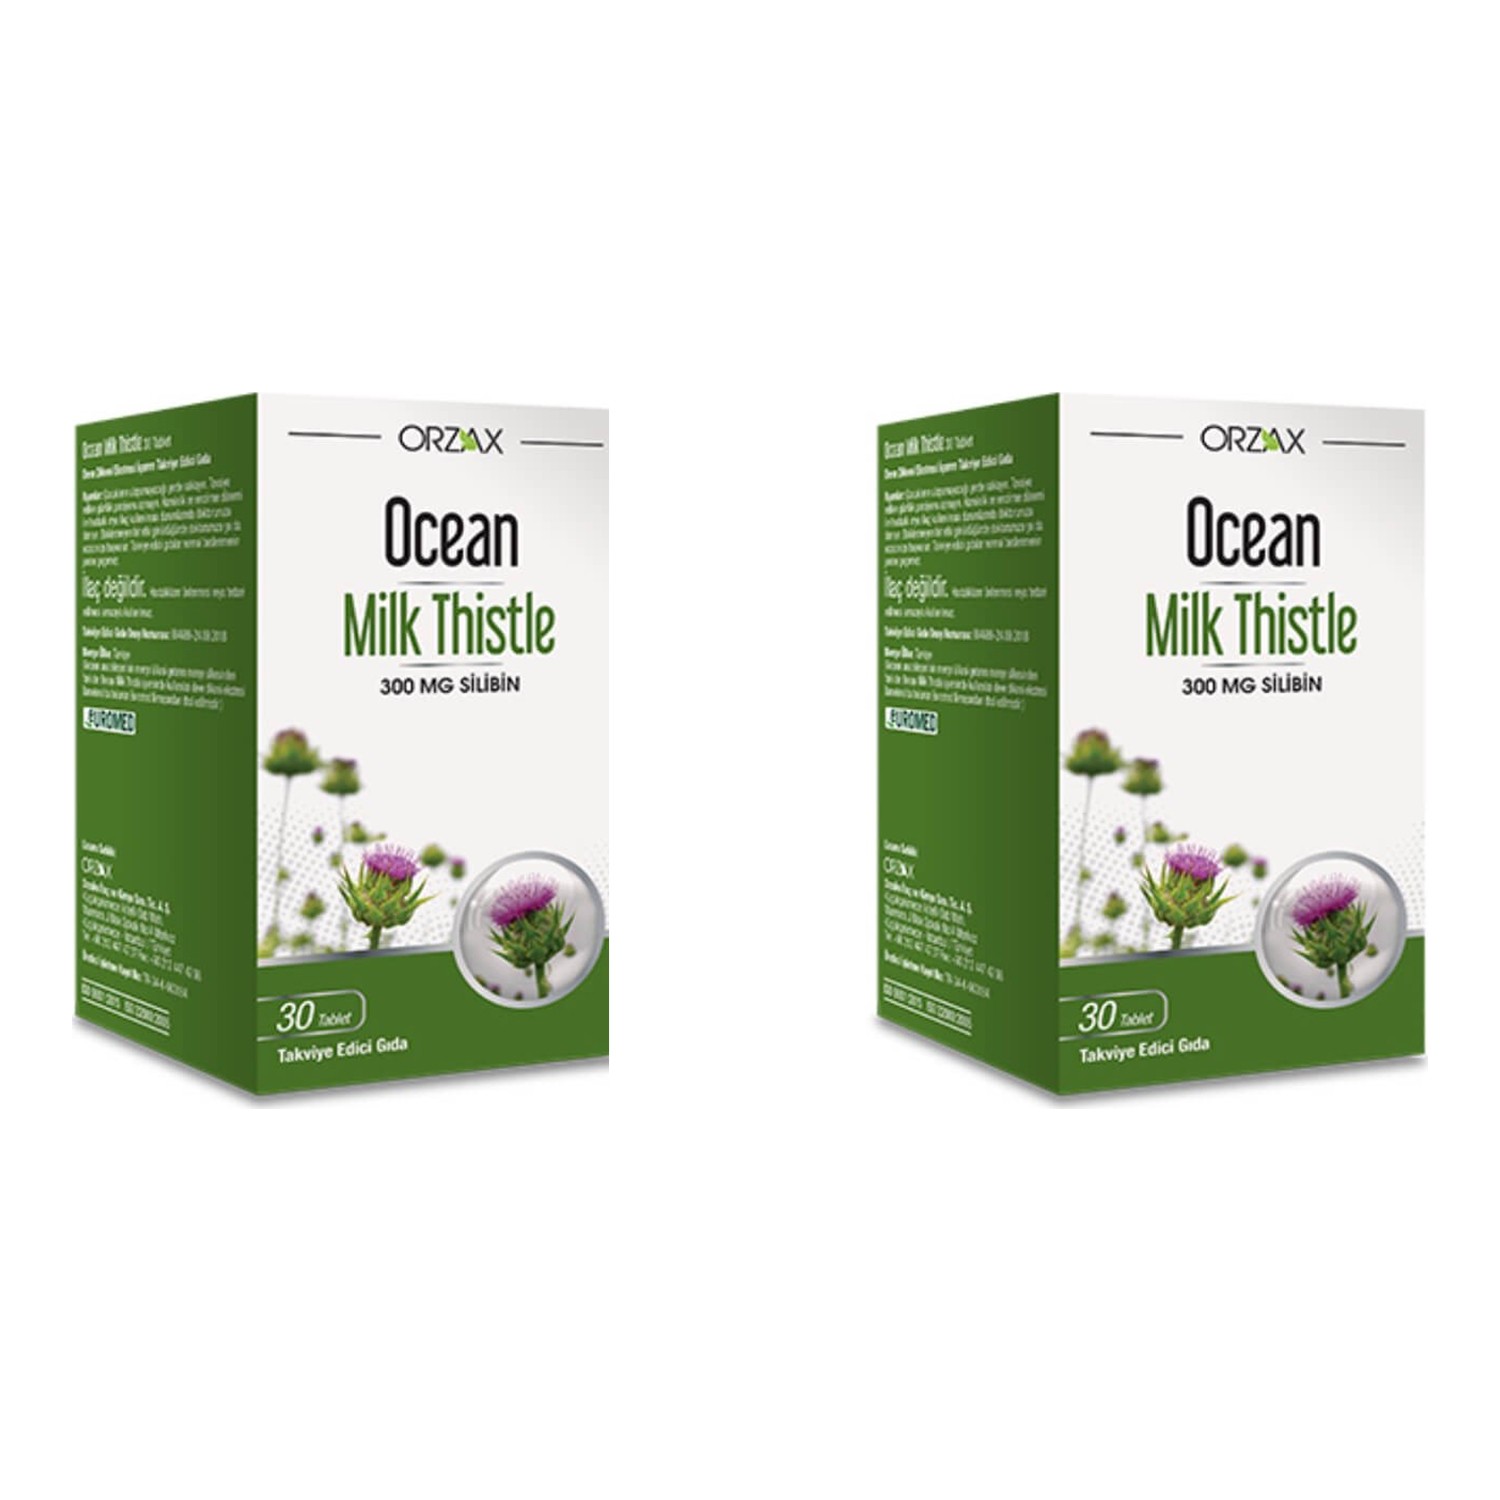 комбинированная добавка orzax ocean extramag tip 30 таблеток Молочный чертополох Orzax Ocean, 2 упаковки по 30 таблеток